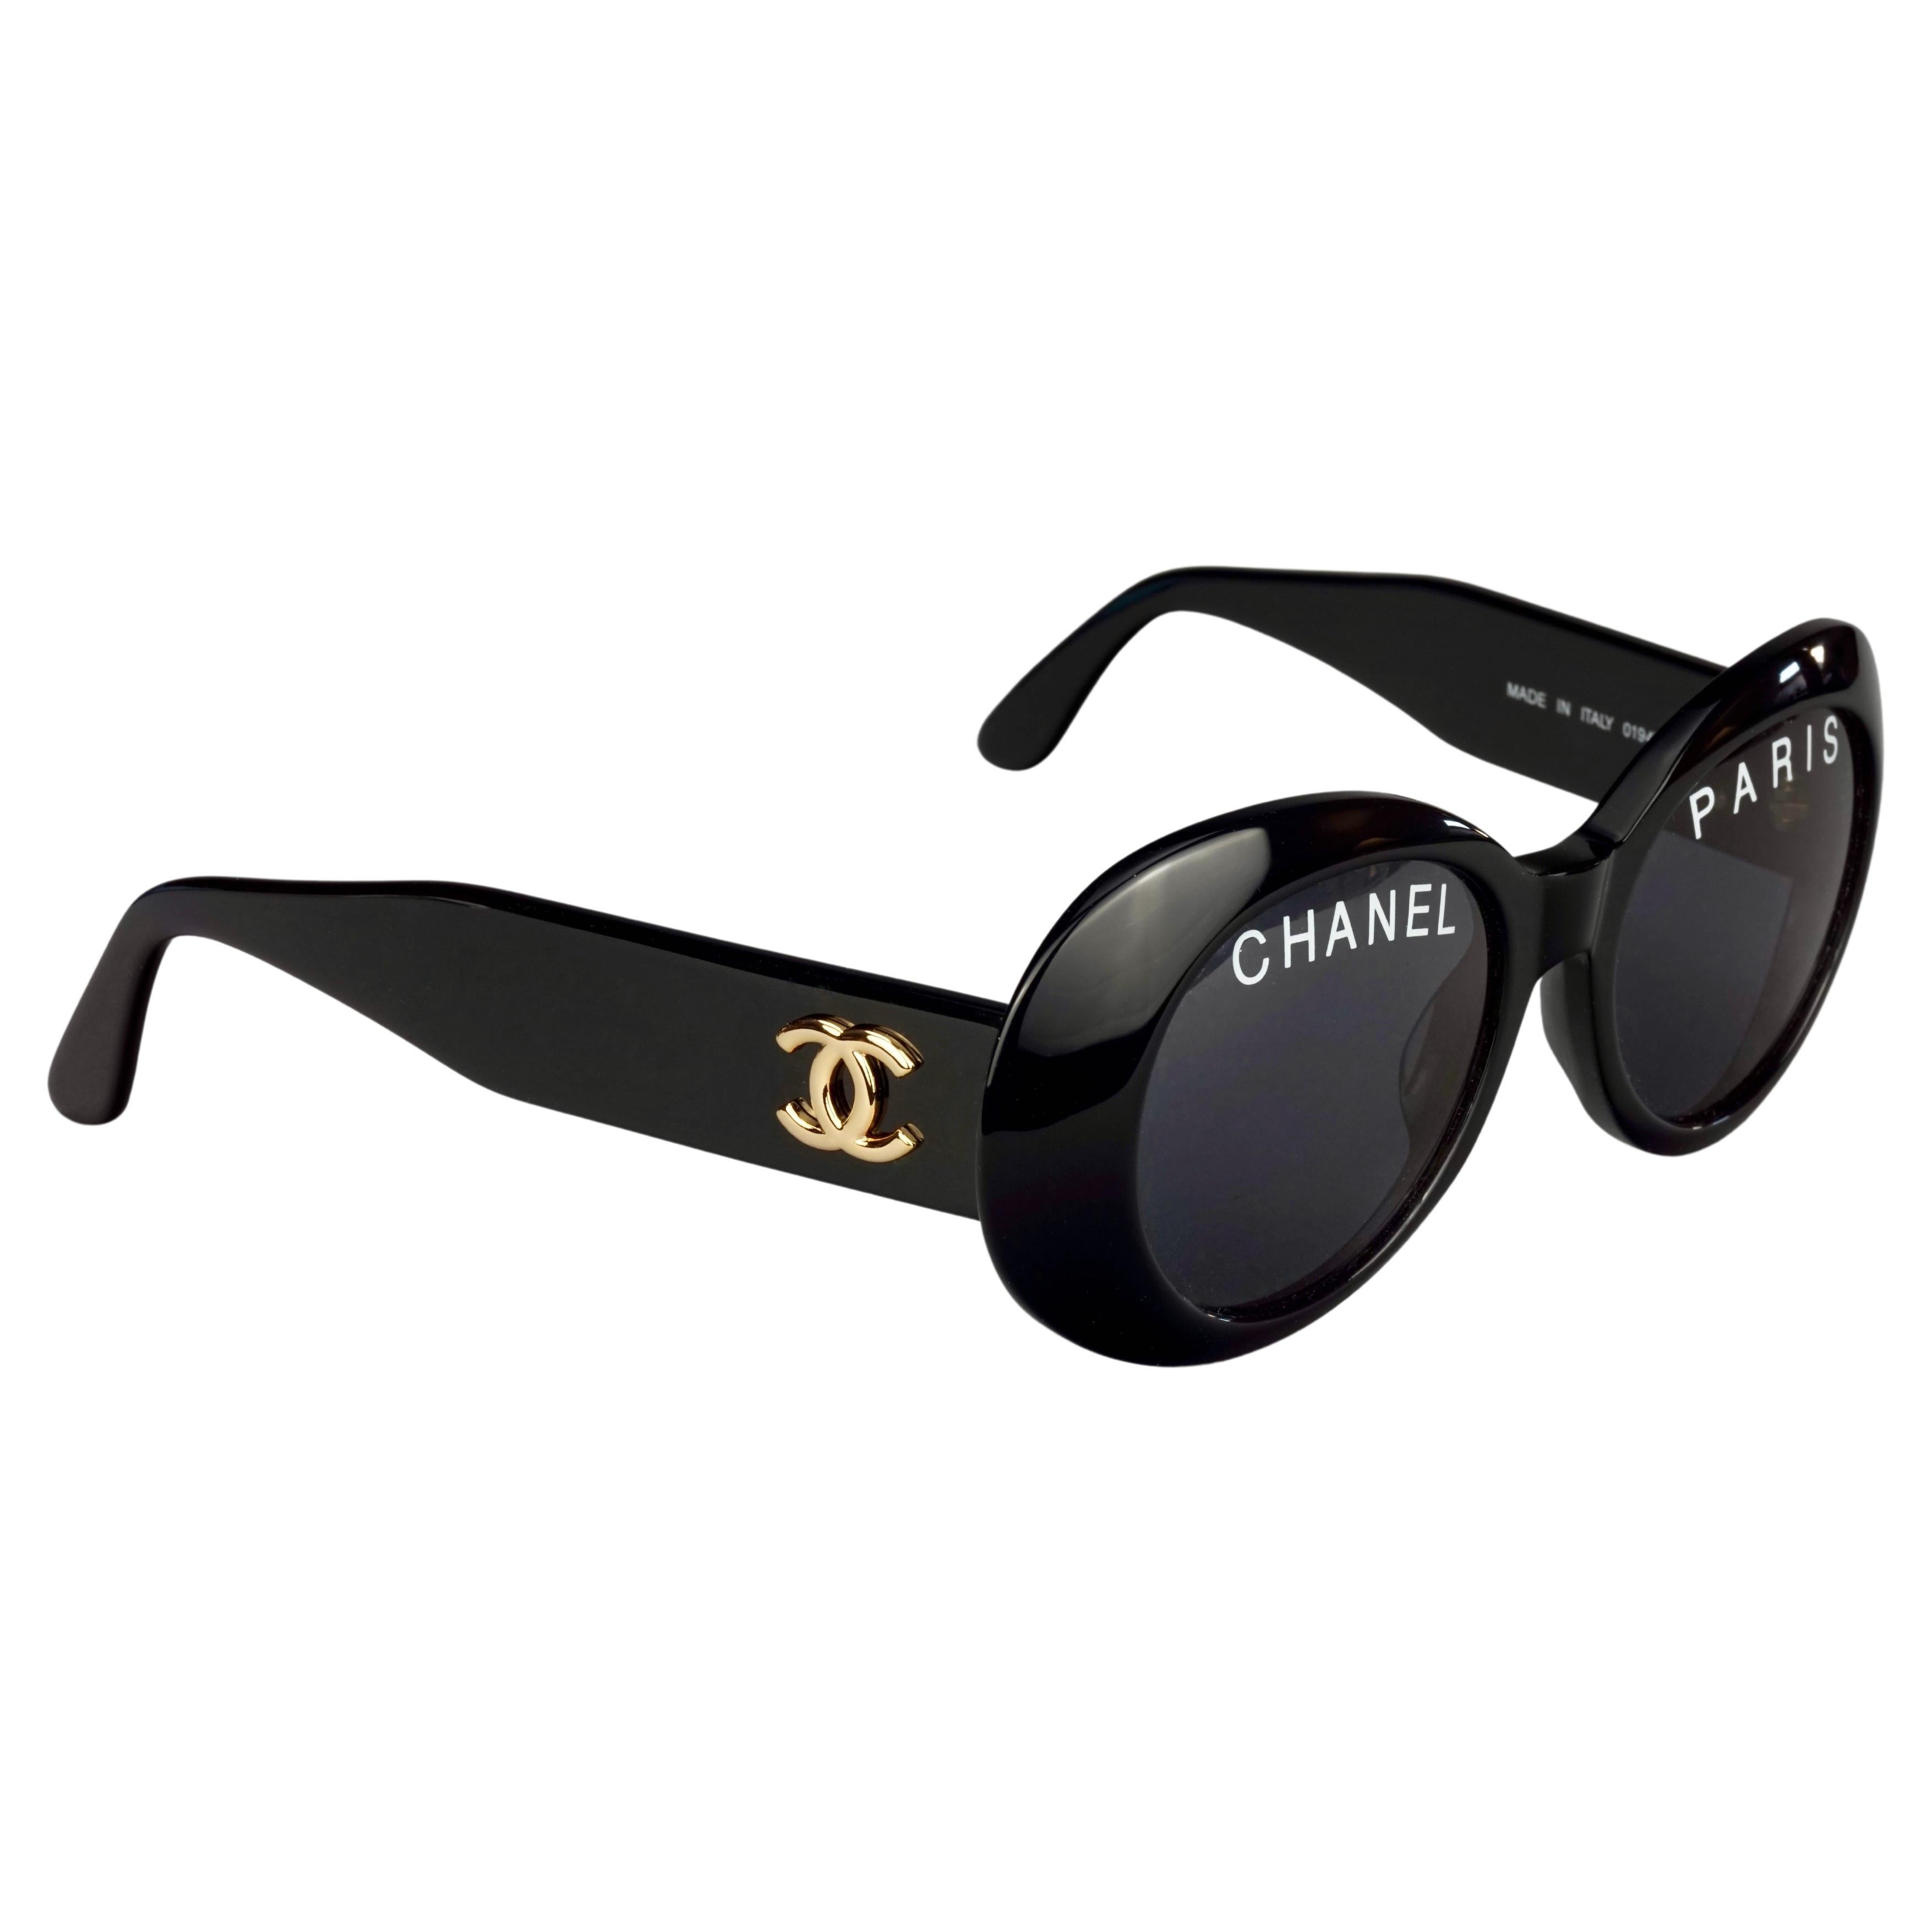 Chanel Pharrell Sunglasses - 4 For Sale on 1stDibs  chanel pharrell  sunglasses price, chanel sunglasses pharrell, pharrell tiffany glasses price